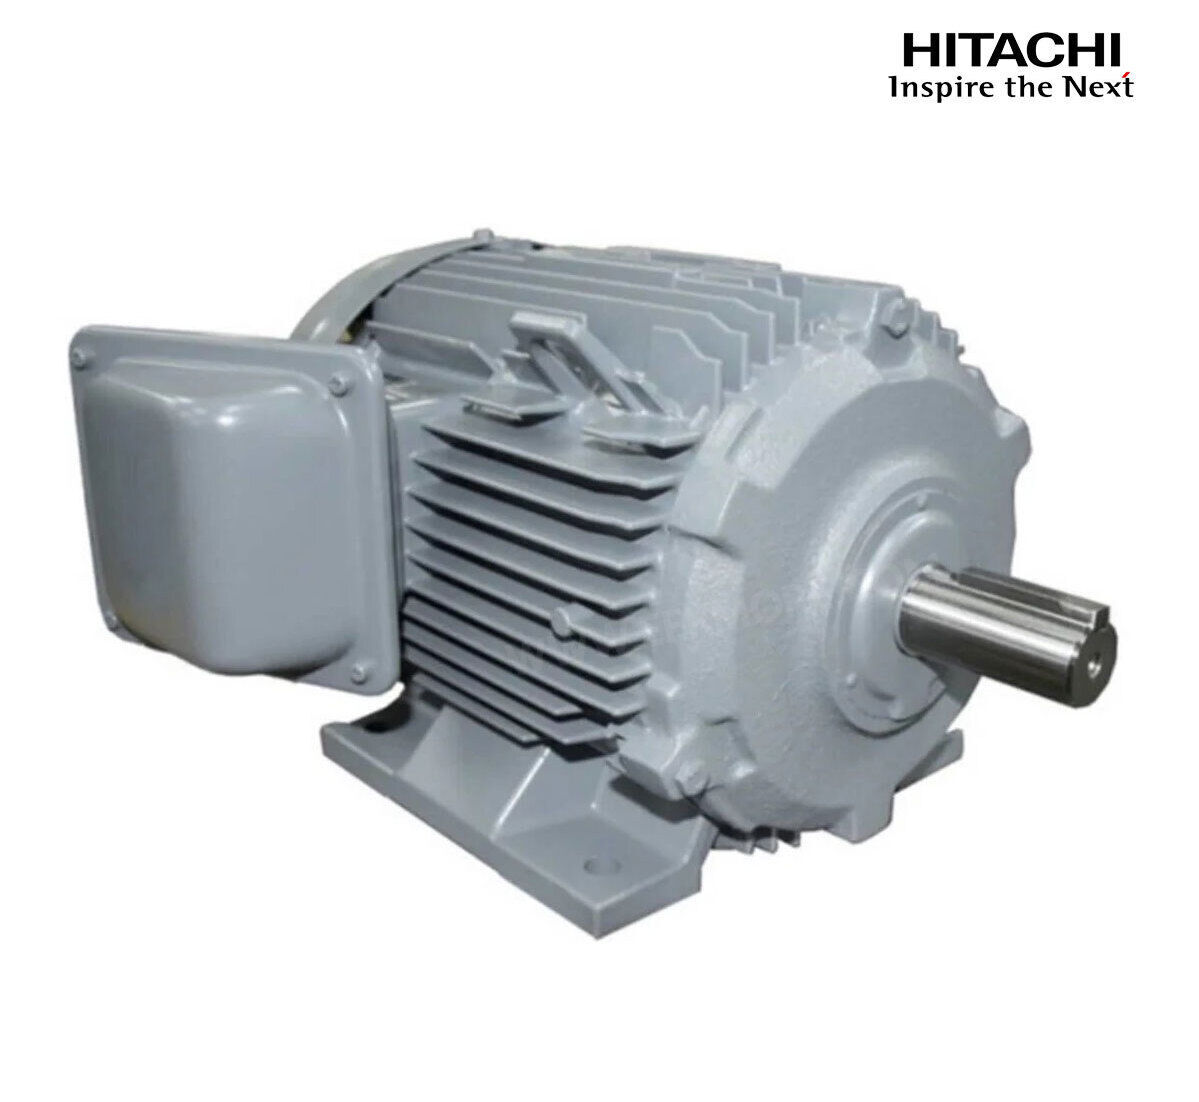 มอเตอร์ฮิตาชิของแท้ 100% HITACHI รุ่น TFO-KK กำลัง 25 แรงม้า (18.5 KW.) กำลังไฟฟ้าที่ใช้ 380V ความเร็วรอบตัวเปล่า 1450 RPM แกนเพลามอเตอร์ 48 MM.รับประกัน 3 ปี มีของพร้อมจัดส่งทุกวัน